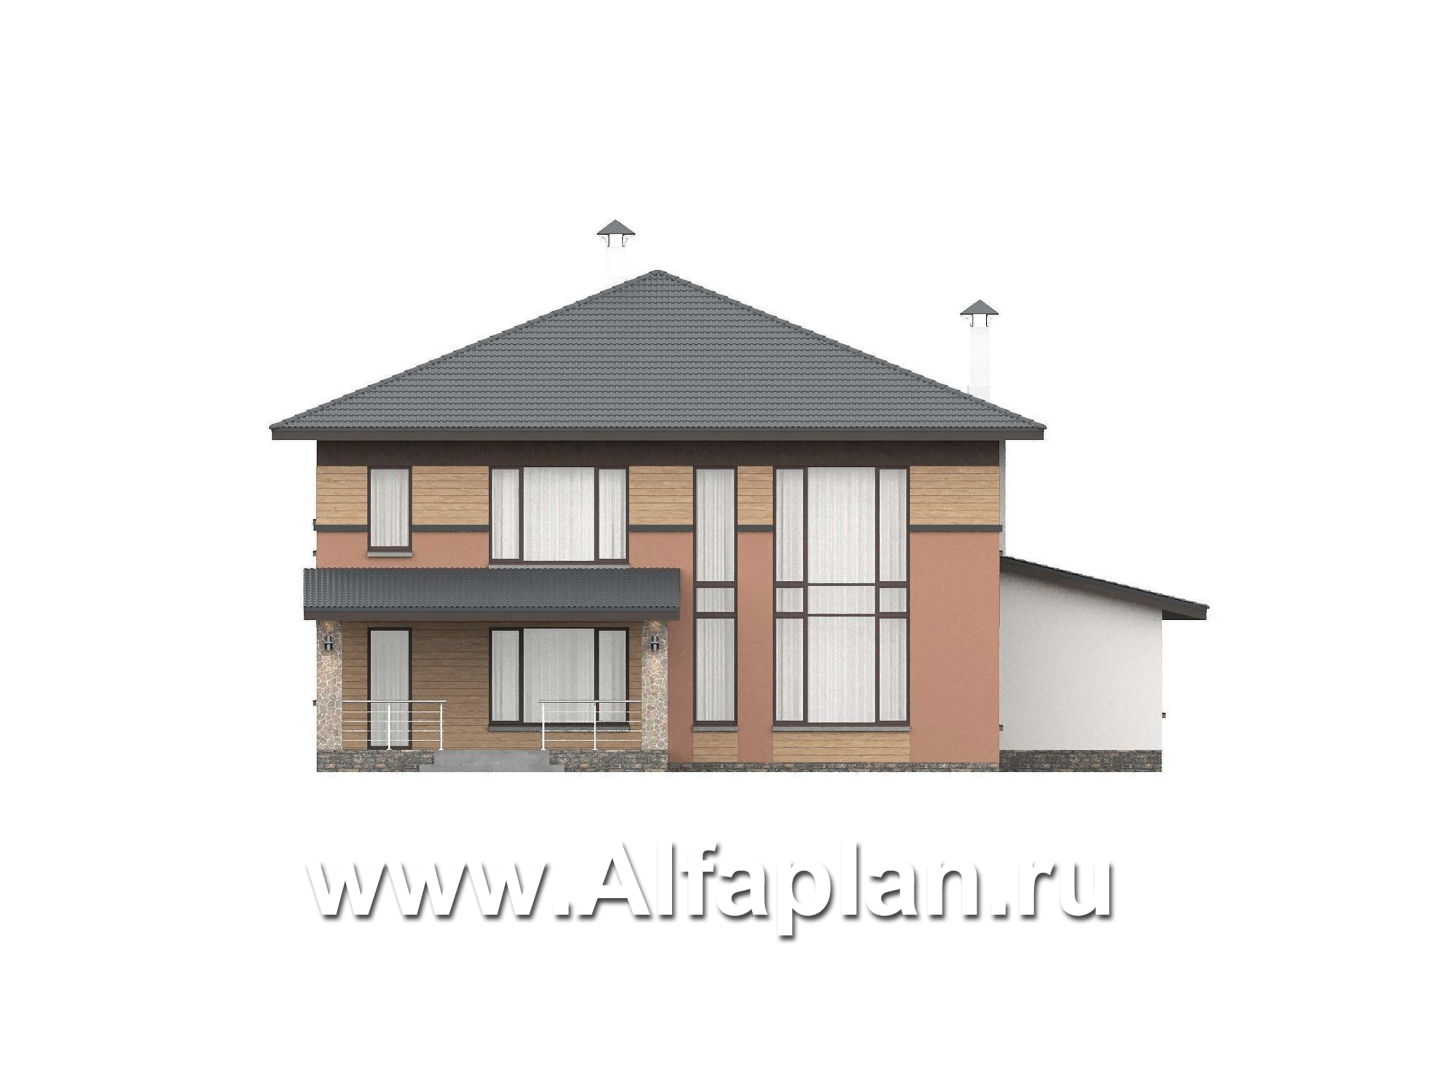 «Серебряный луч» - проект двухэтажного дома, планировка две спальни на 1эт и второй свет в гостиной, в современном стиле - фасад дома